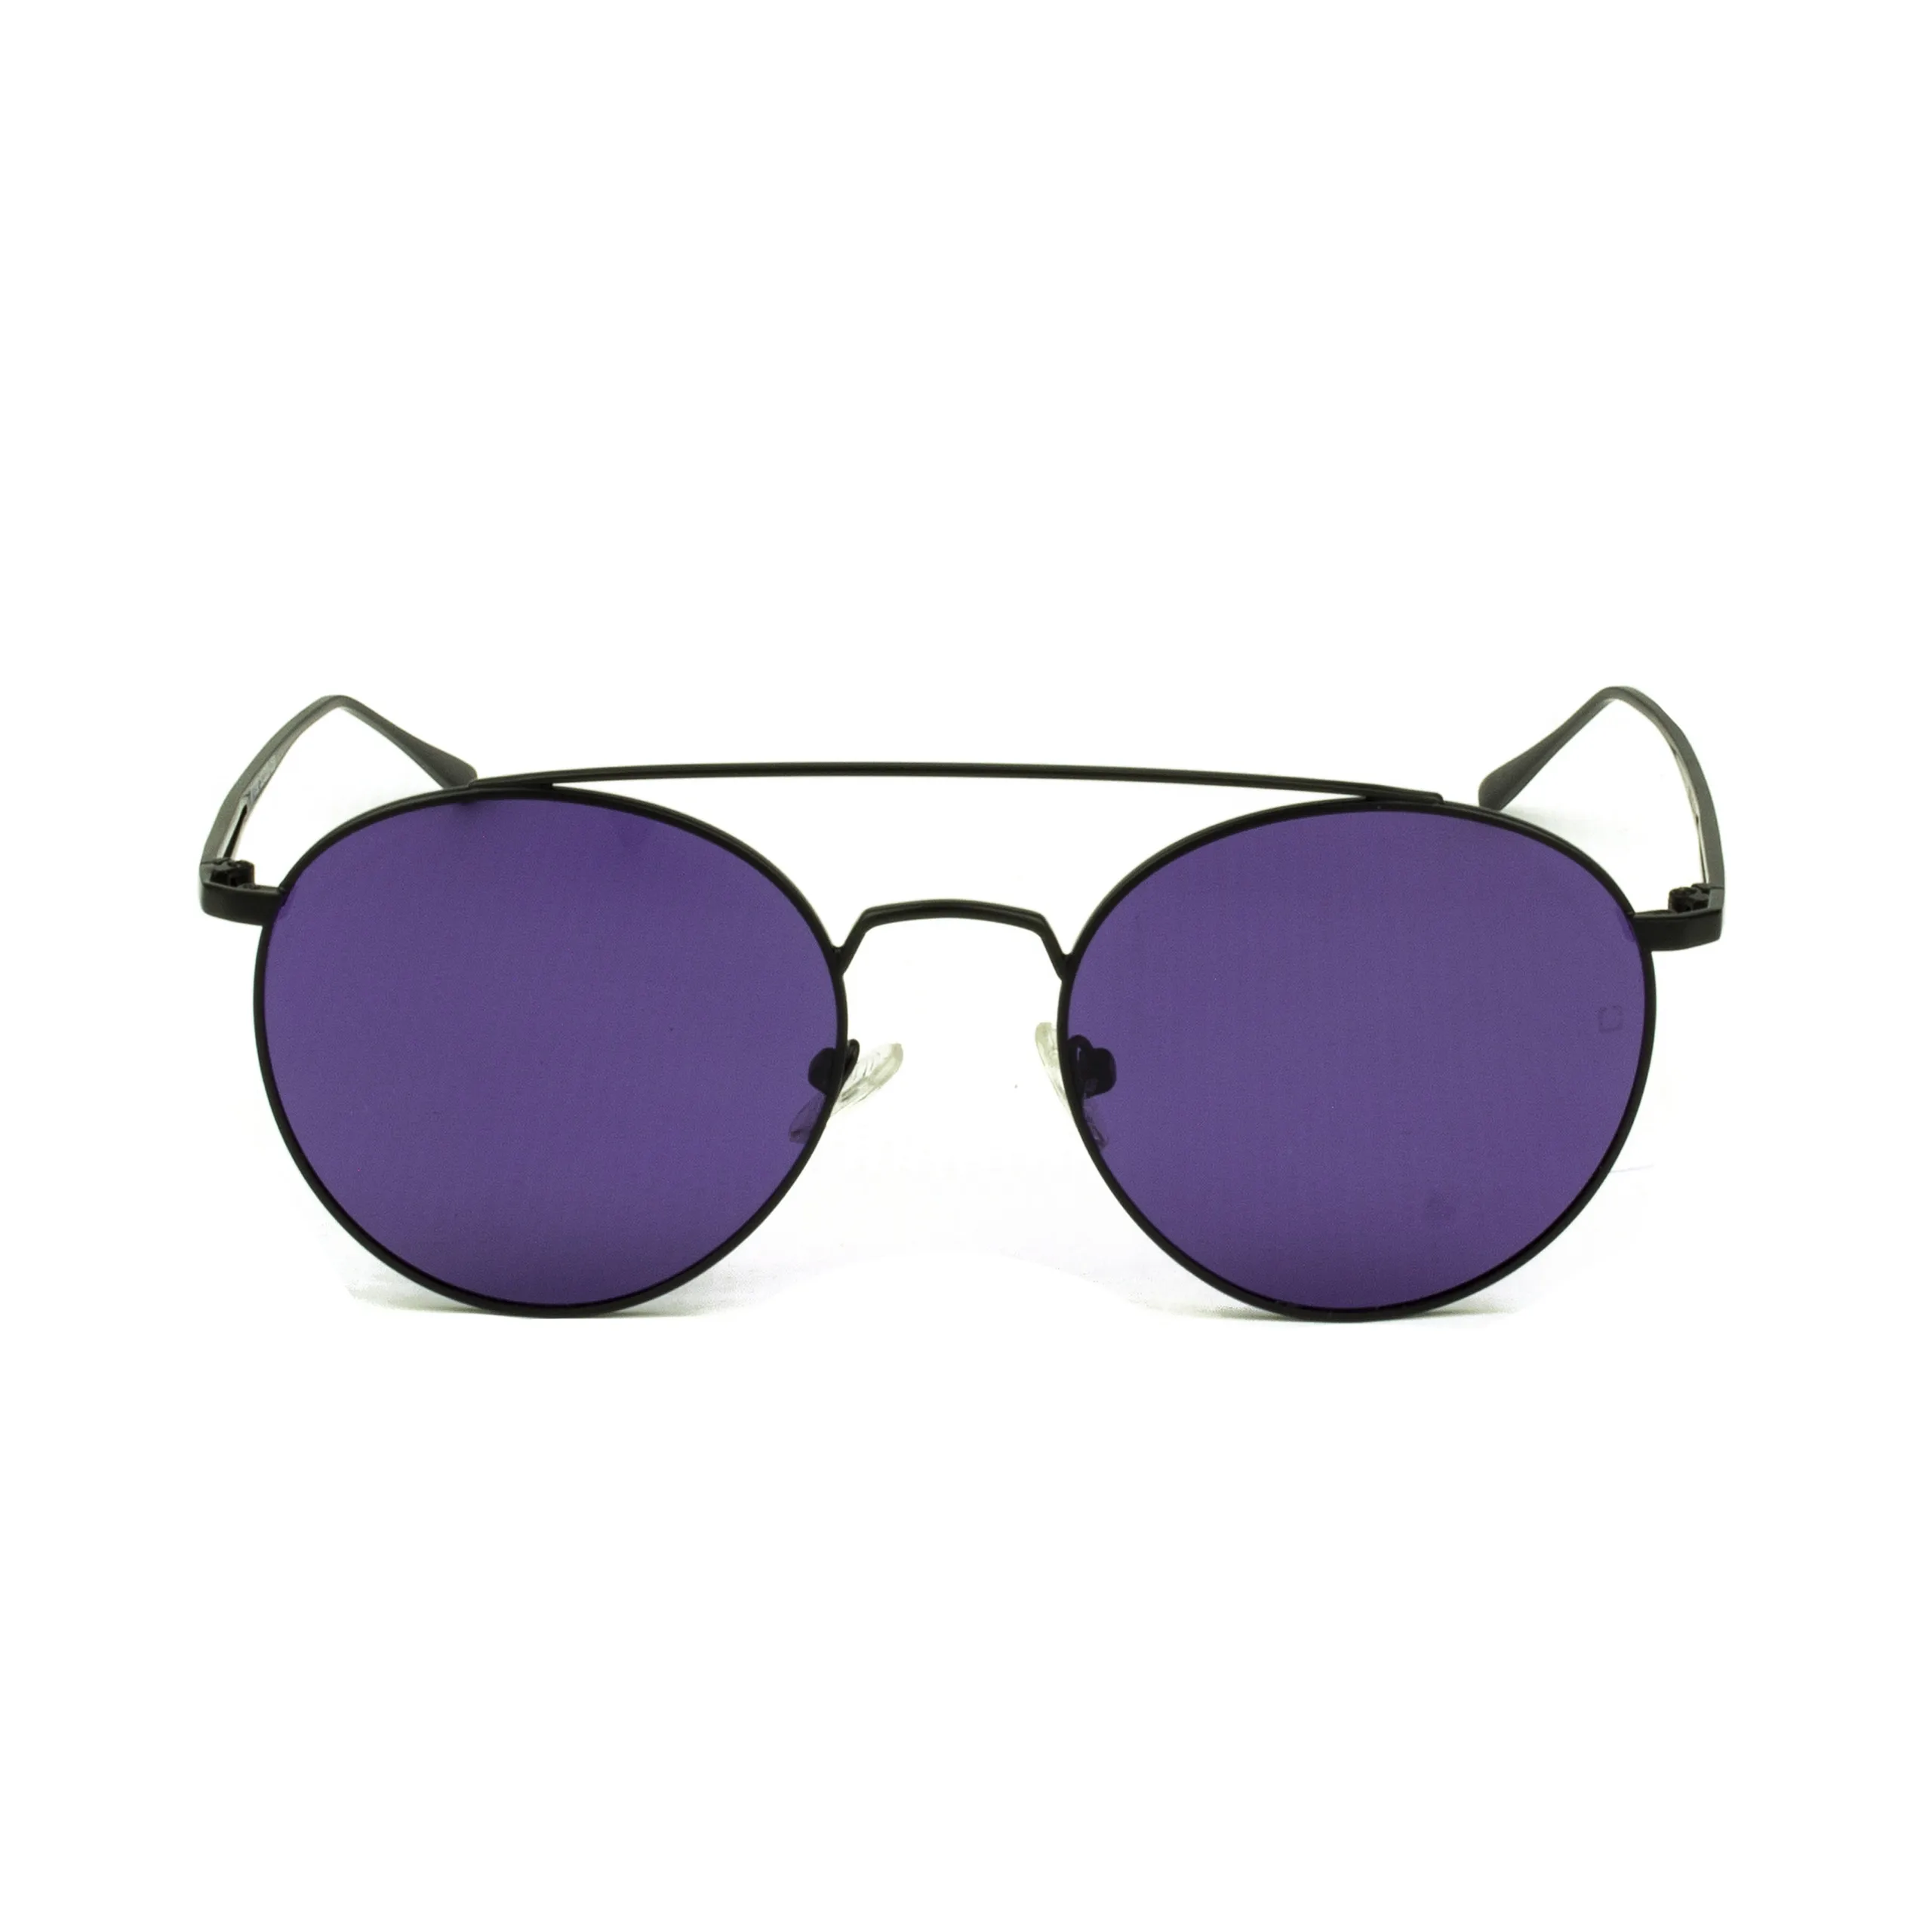 Zolo eyewear m1098 фиолетовые поляризованные солнцезащитные очки